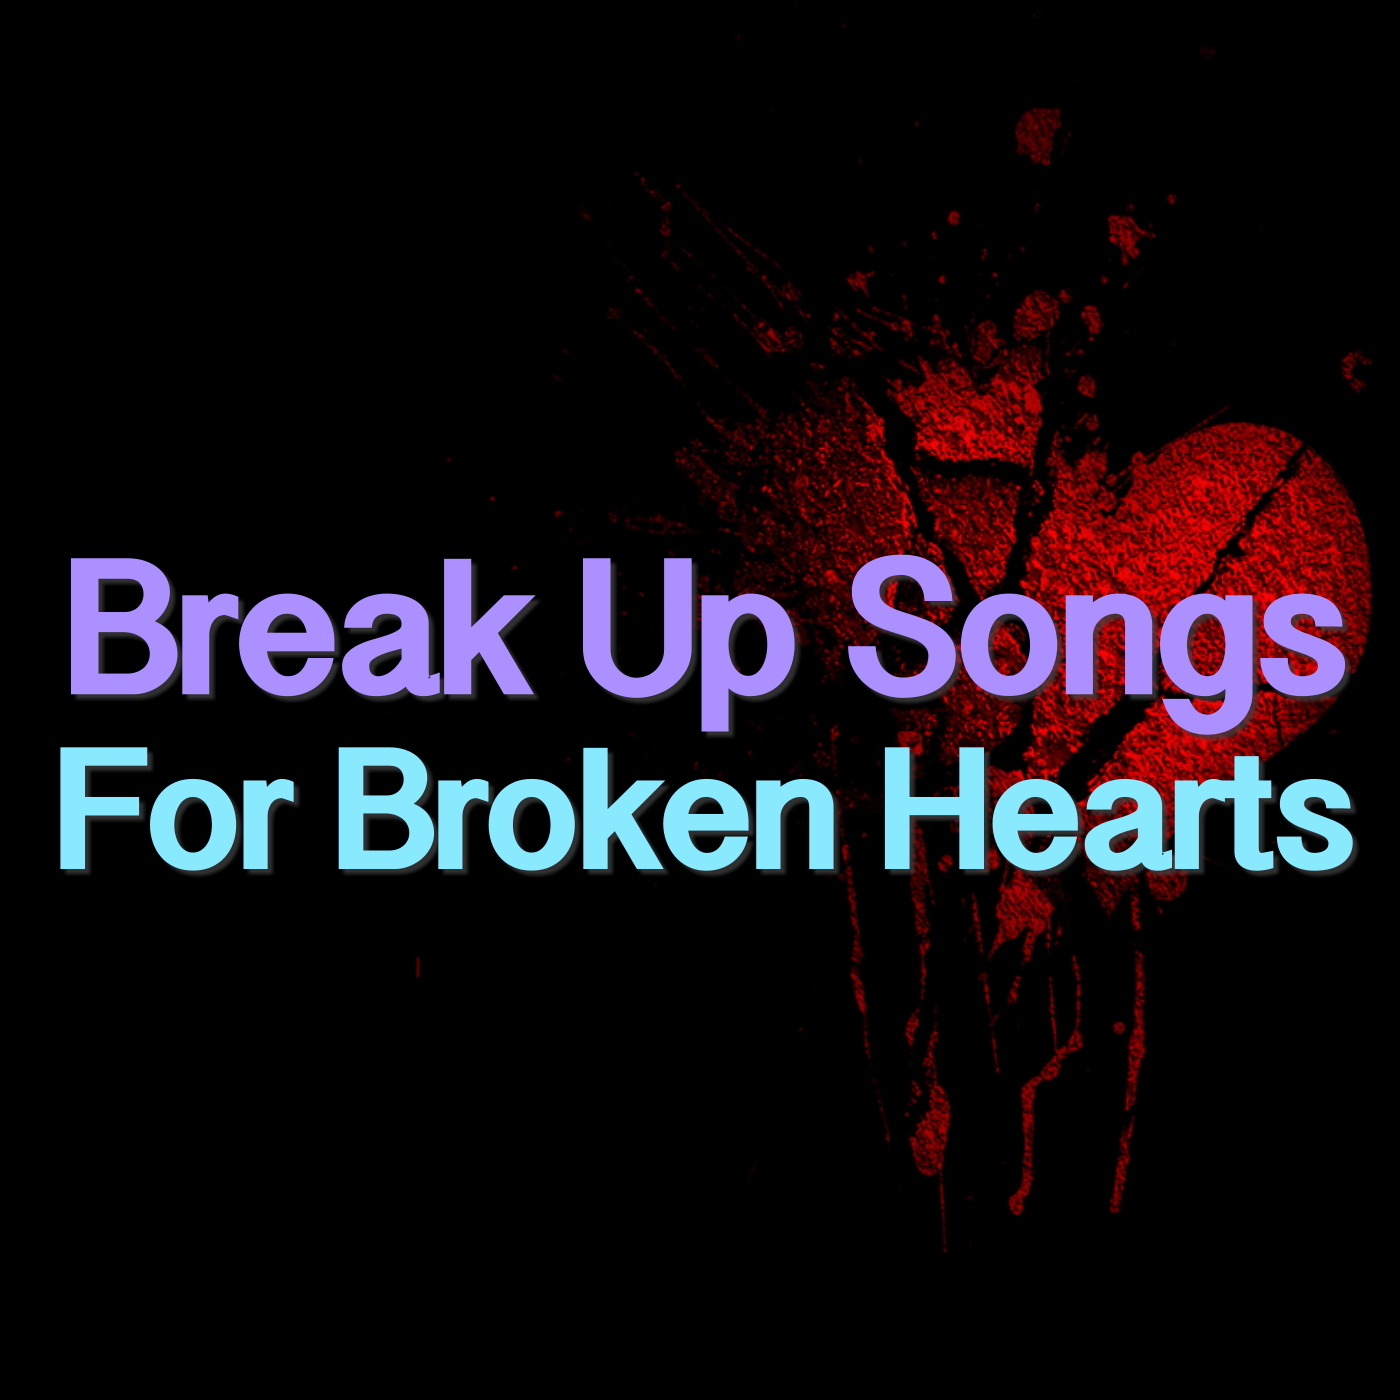 Break Up Songs For Broken Hearts